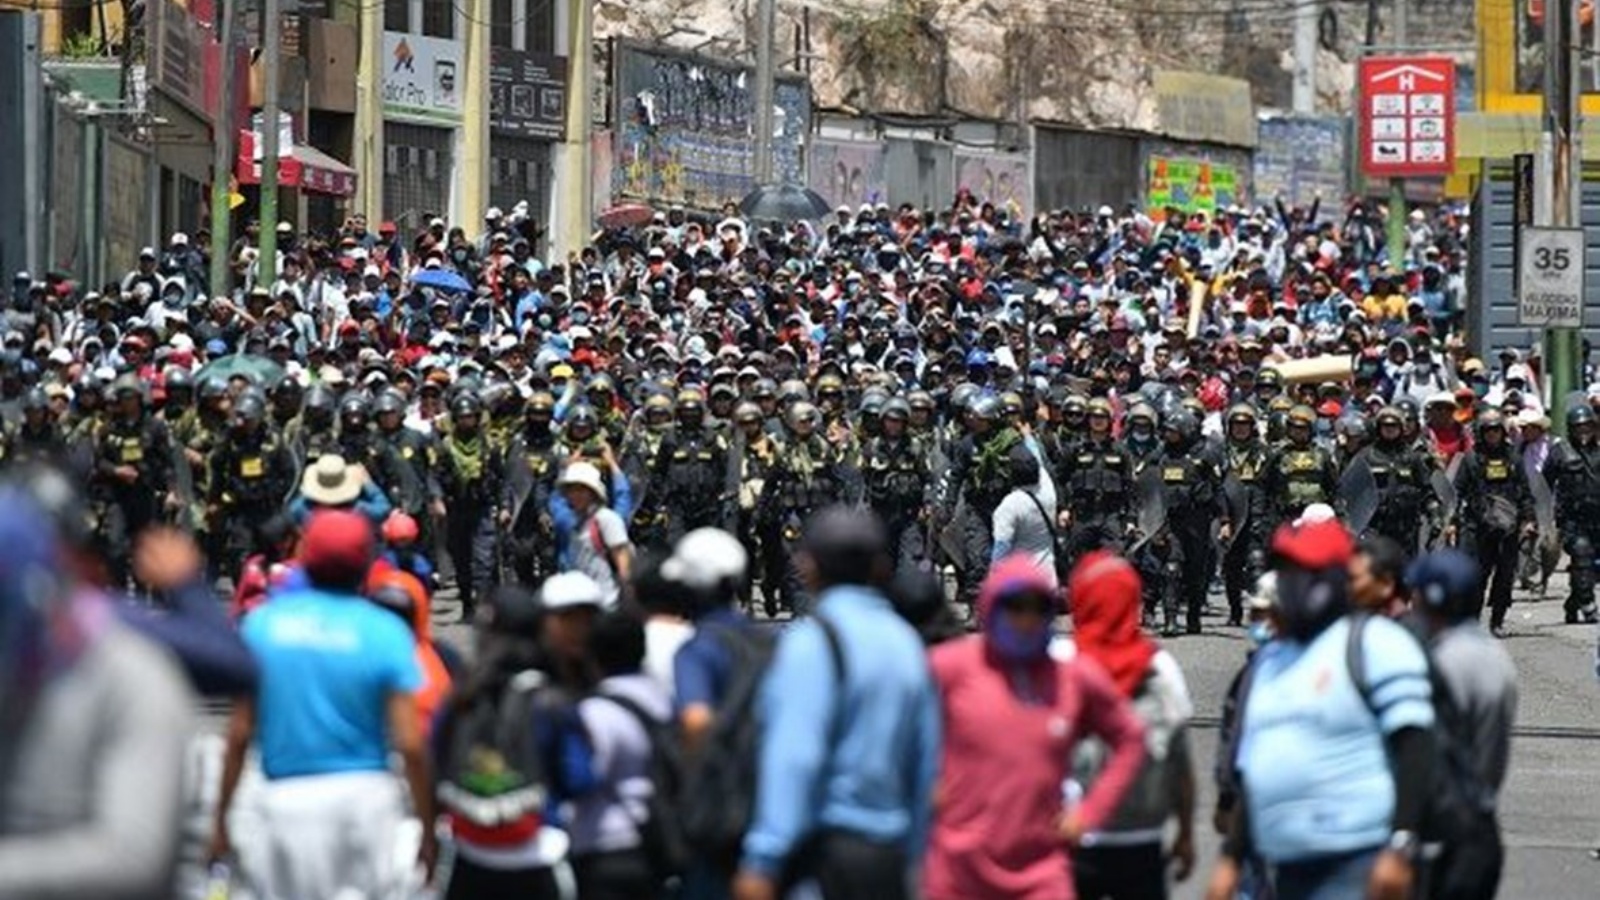 عناصر من الشرطة يرافقون أنصار الرئيس السابق بيدرو كاستيلو أثناء سيرهم إلى وسط مدينة أريكويبا، البيرو 